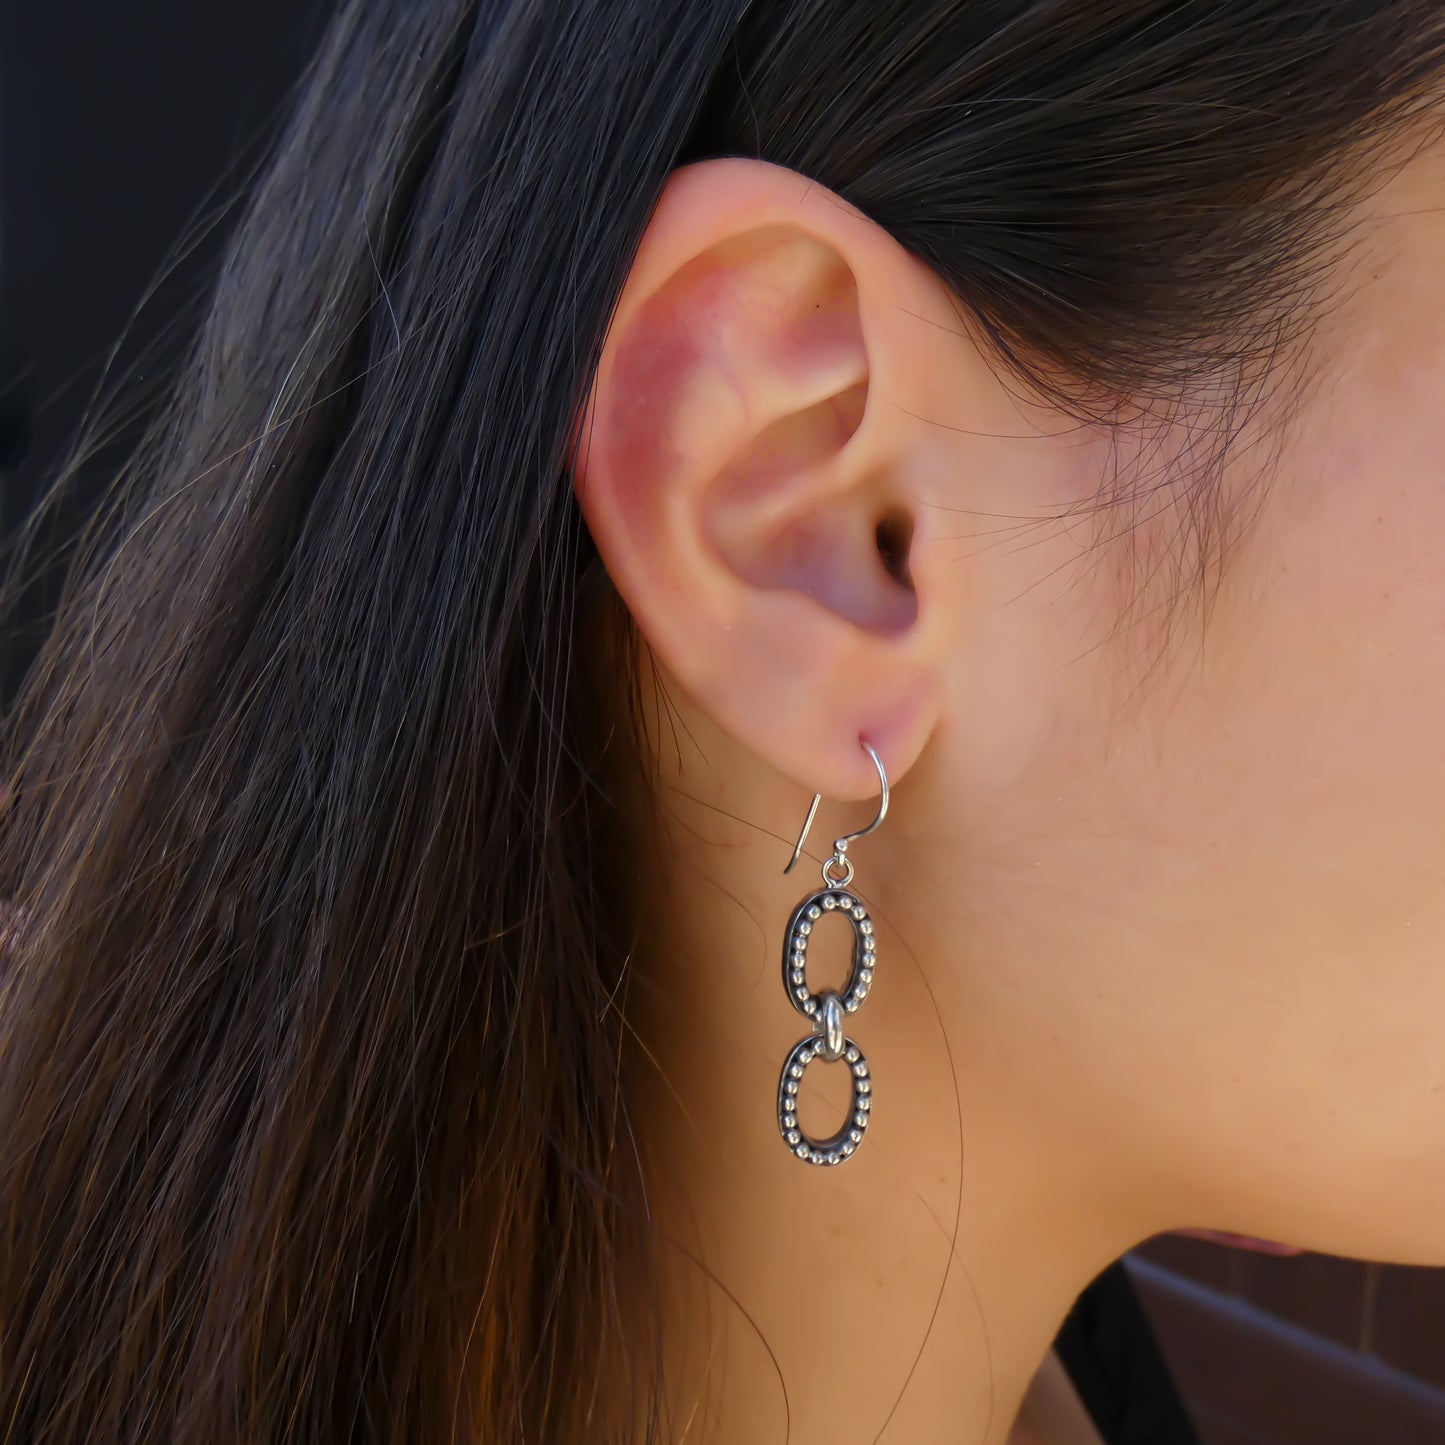 Woman wearing double oval beaded earrings.